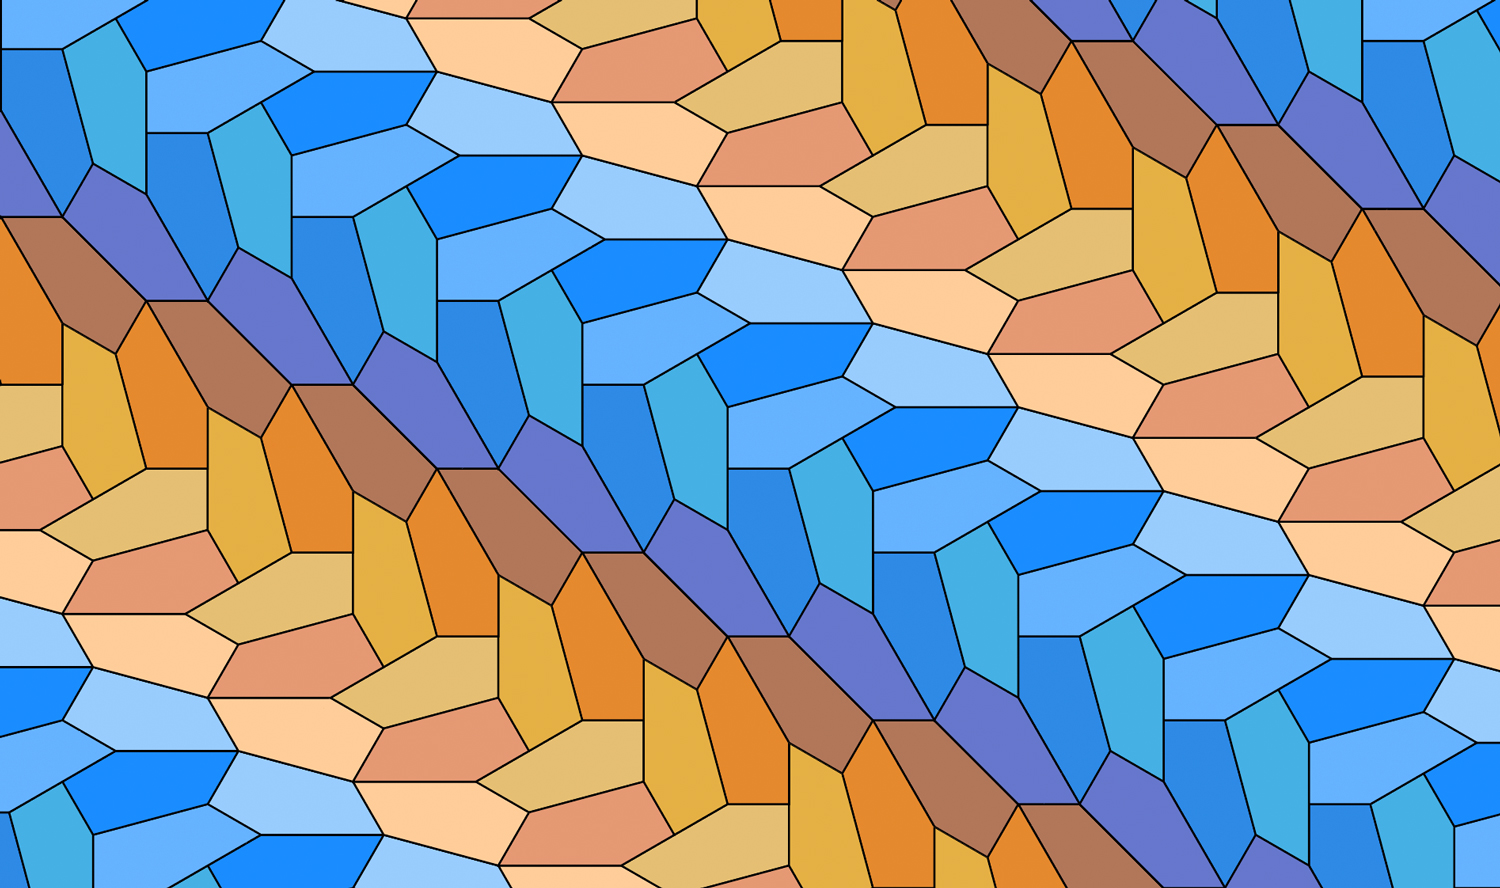 Type 15 tesselating pentagon pattern in Adobe Illustrator